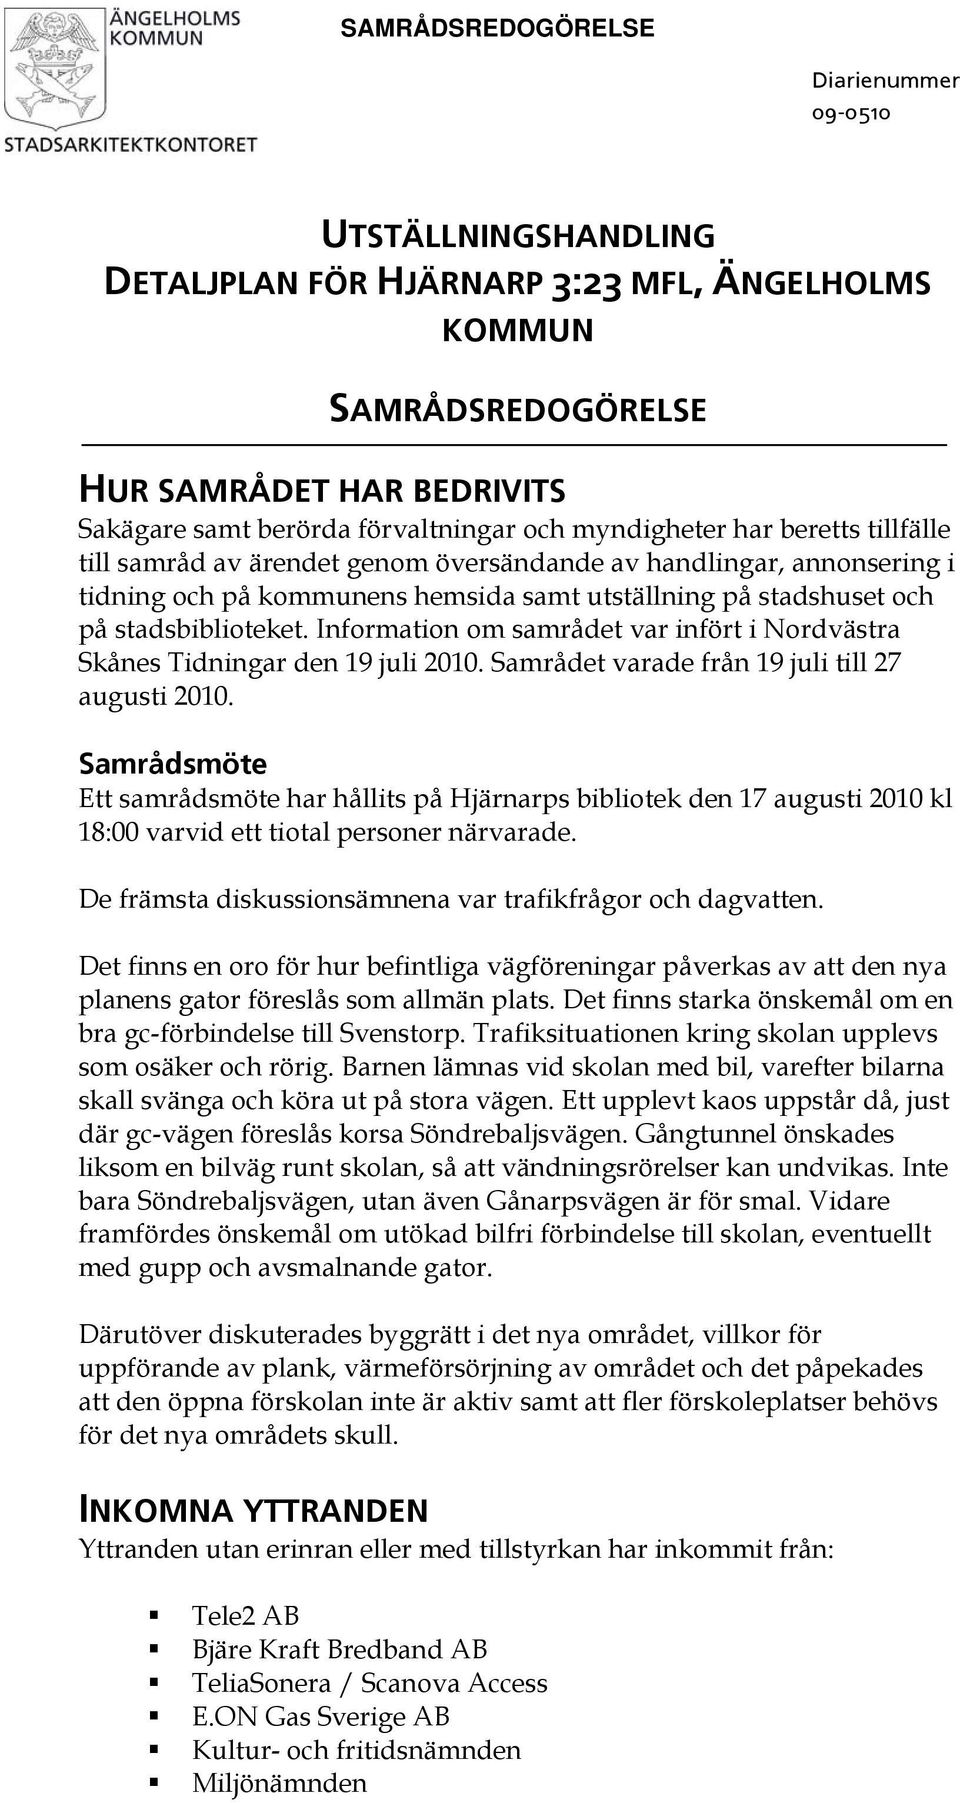 Information om samrådet var infört i Nordvästra Skånes Tidningar den 19 juli 2010. Samrådet varade från 19 juli till 27 augusti 2010.